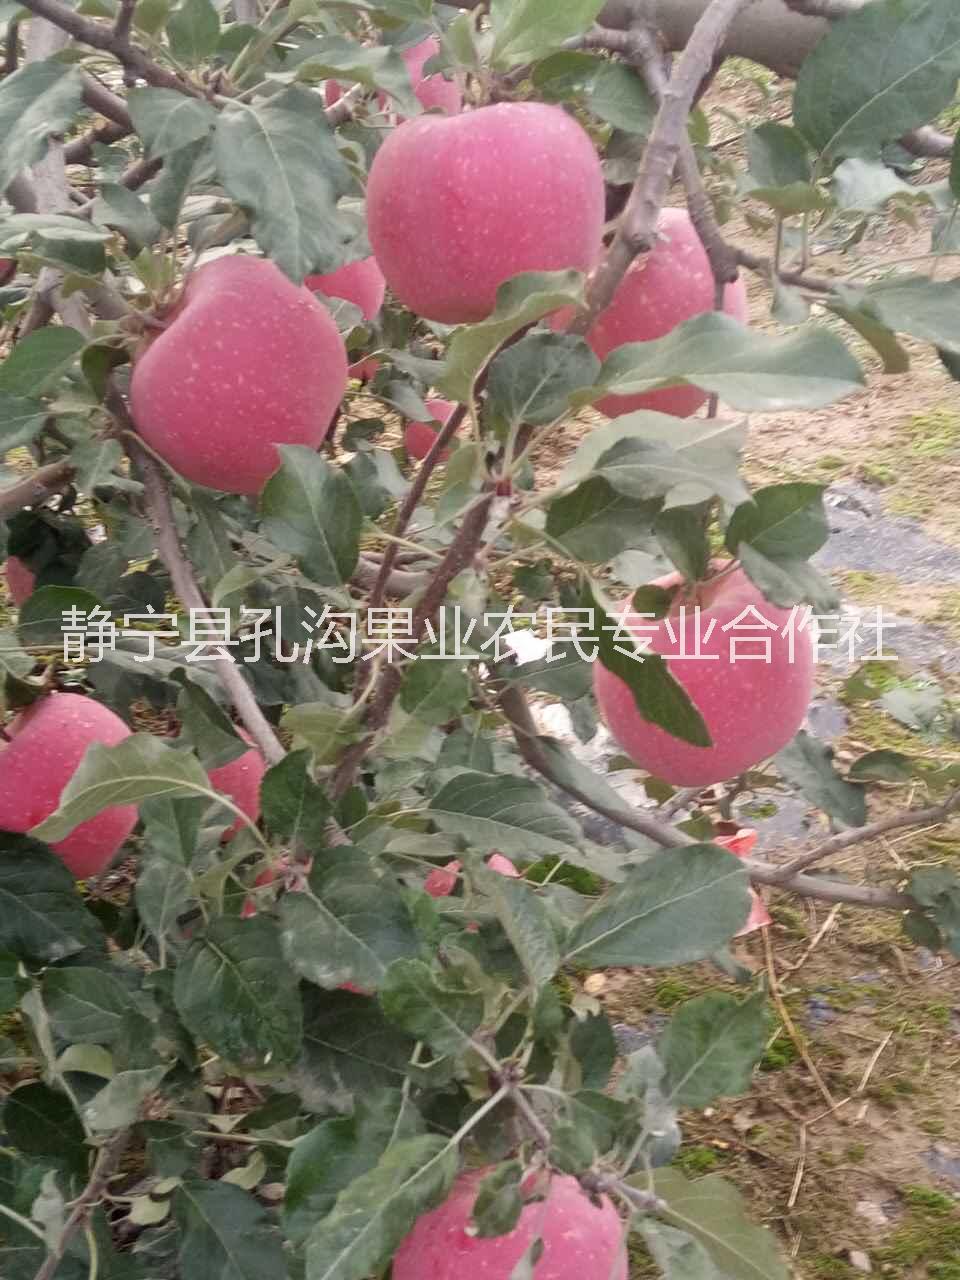 75#红富士苹果 甘肃静宁红富士9枚礼盒装 苹果红富士图片